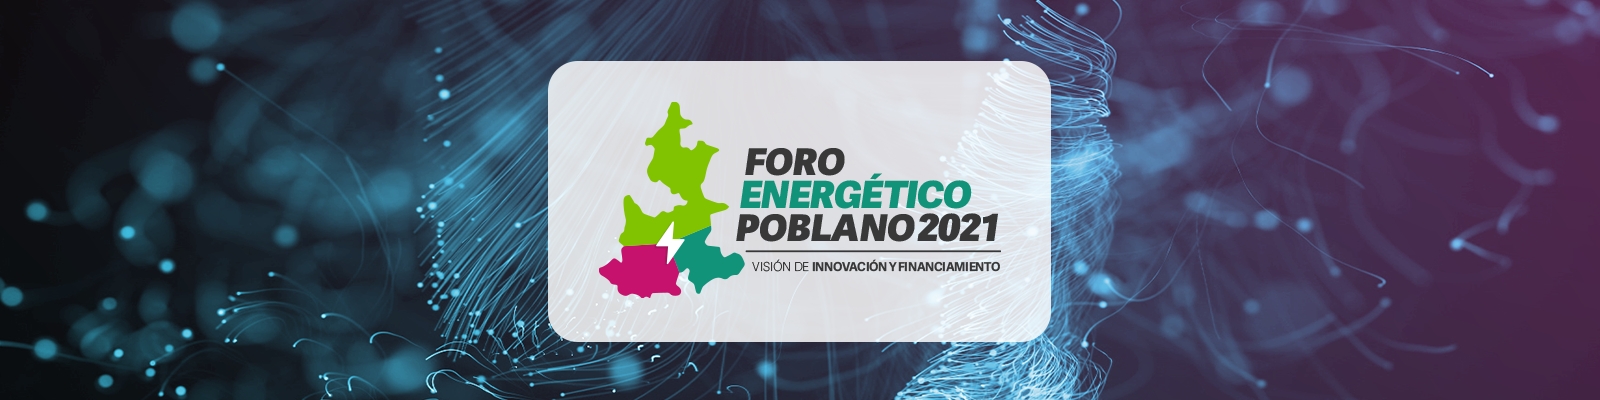 Foro Energético Poblano 2021